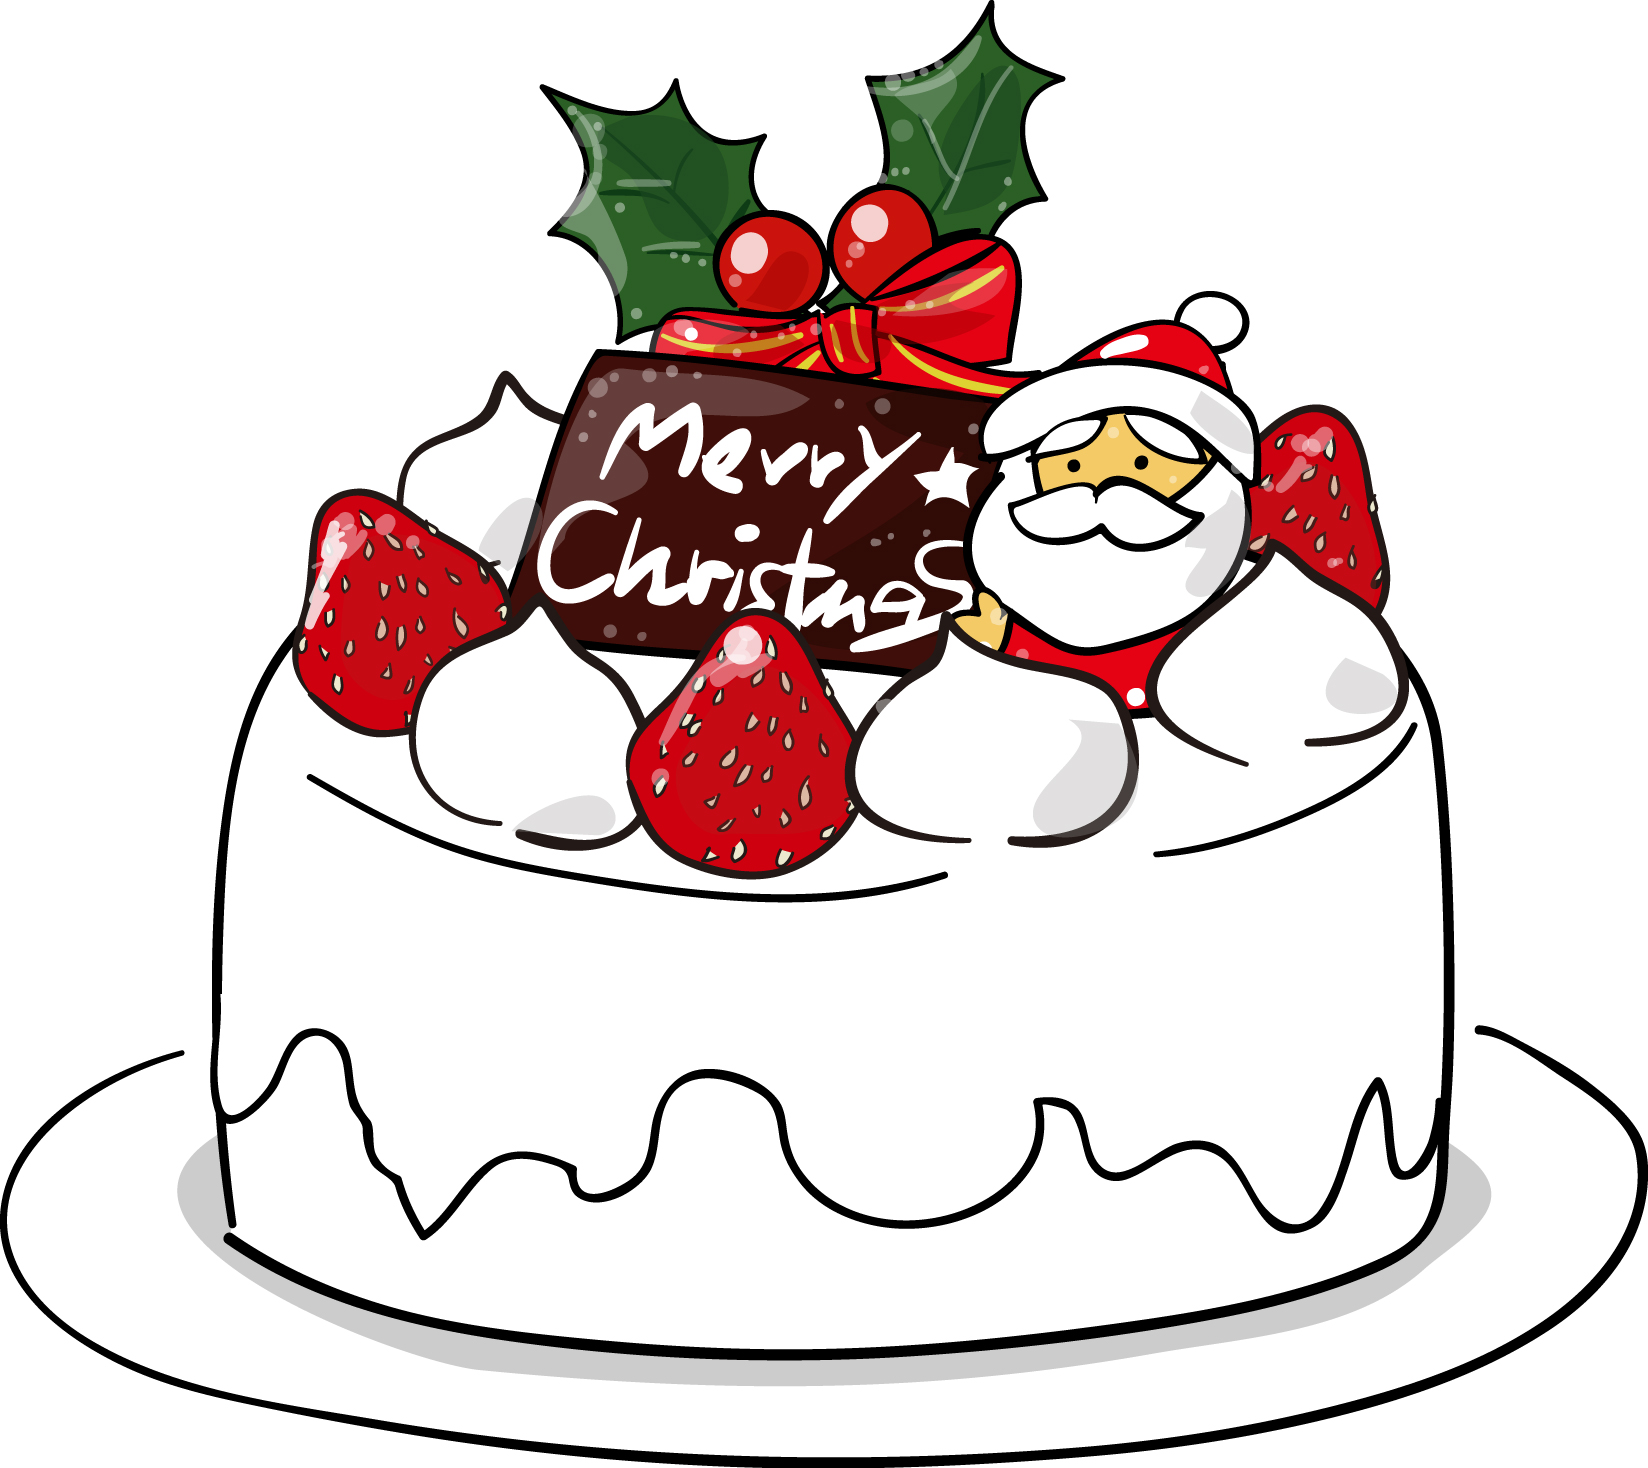 冬・食べ物の印刷用イラスト素材「クリスマスケーキ」ダウンロード